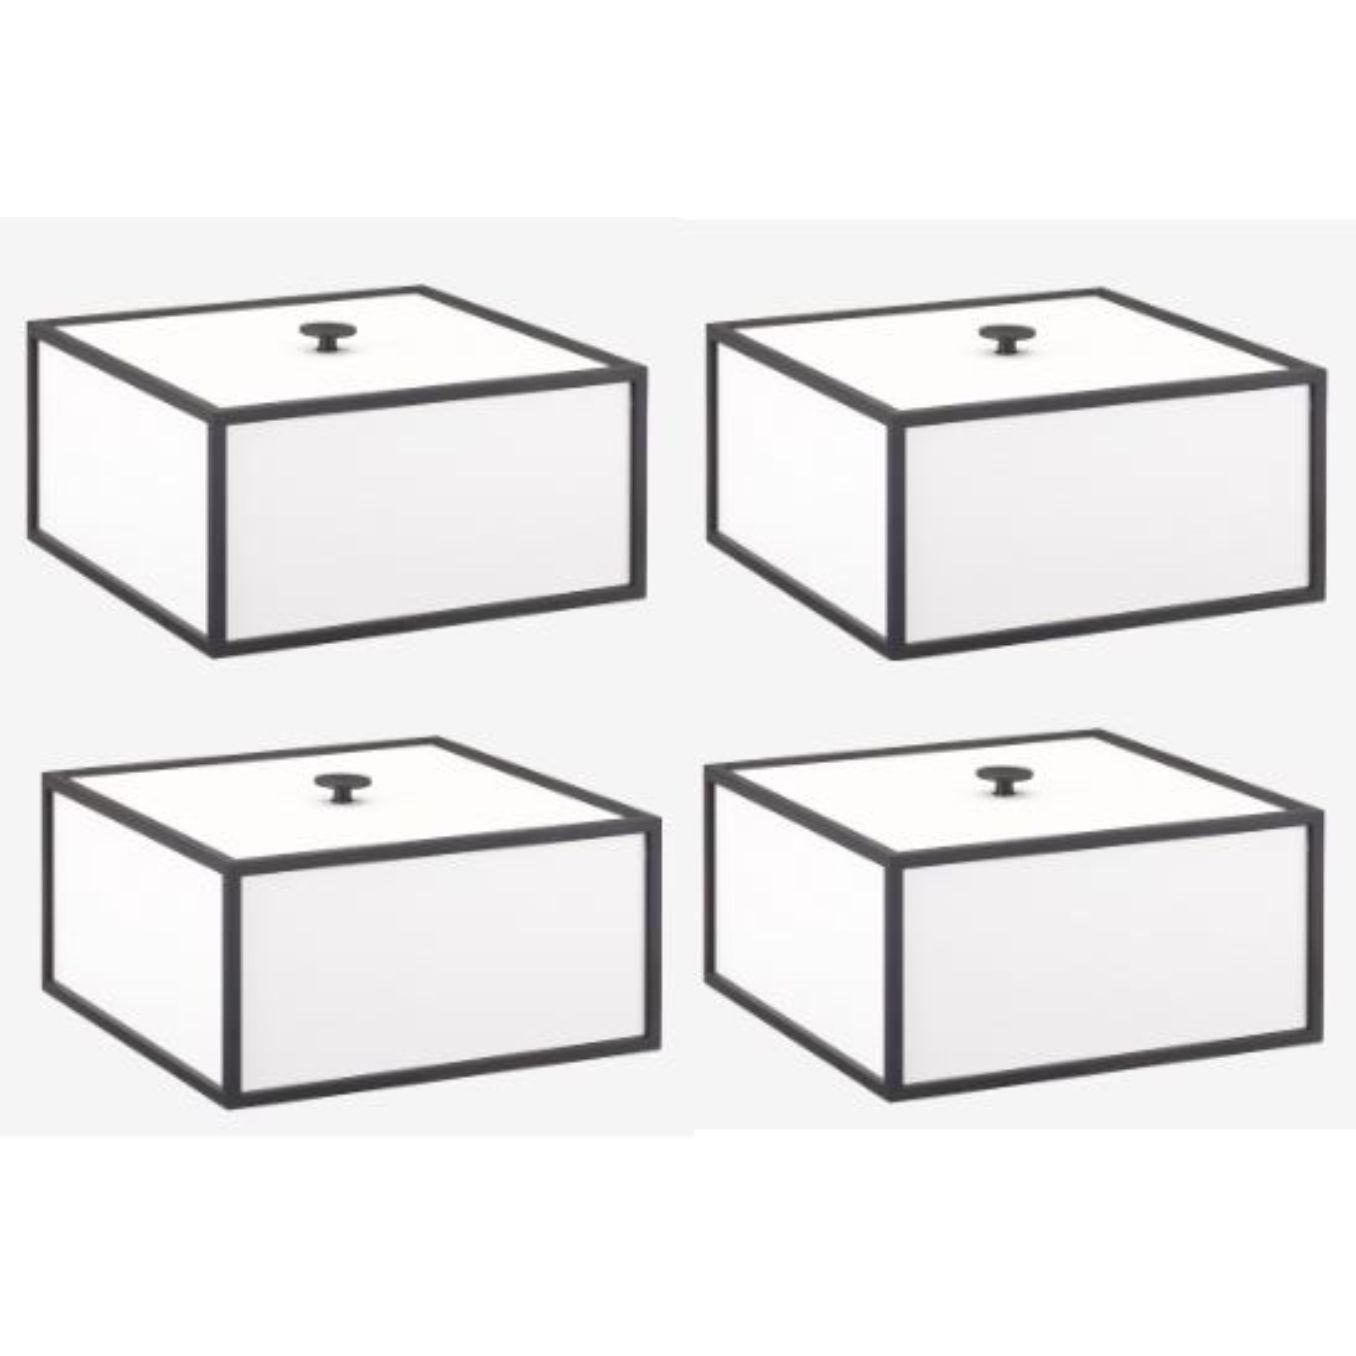 4er-Set weißer Rahmen 20 Box von Lassen
Abmessungen: T 20 x B 20 x H 10 cm 
MATERIALIEN: Melamin, Melamin, Metall, Furnier
Gewicht: 2.00 kg

Frame Box ist eine quadratische Box in kubistischer Form. Die schlichten Kästen sind von den